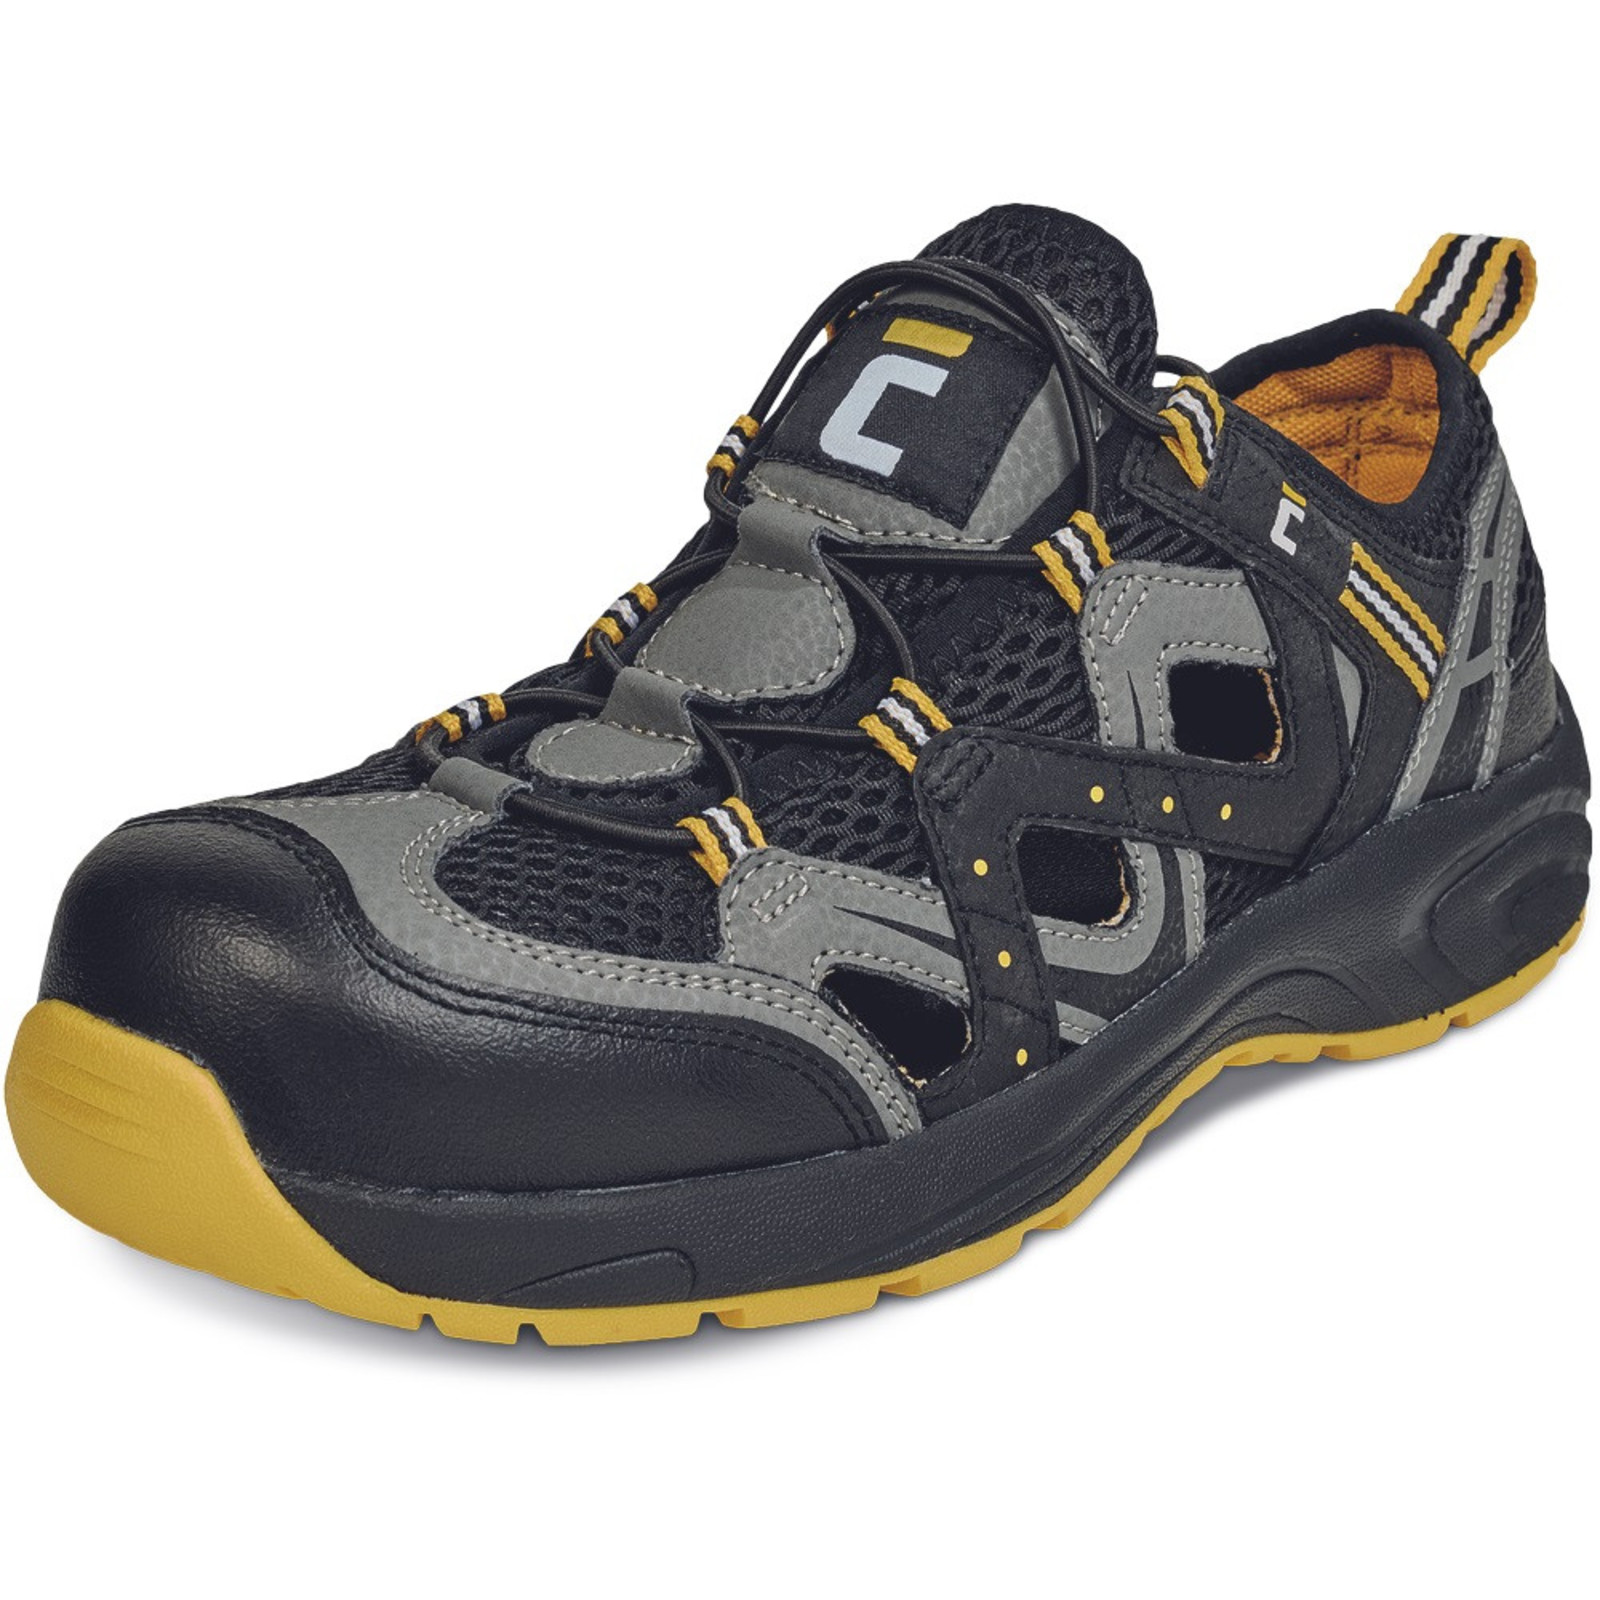 Bezpečnostné sandále Cerva Henford MF S1 SRC - veľkosť: 43, farba: čierna/žltá